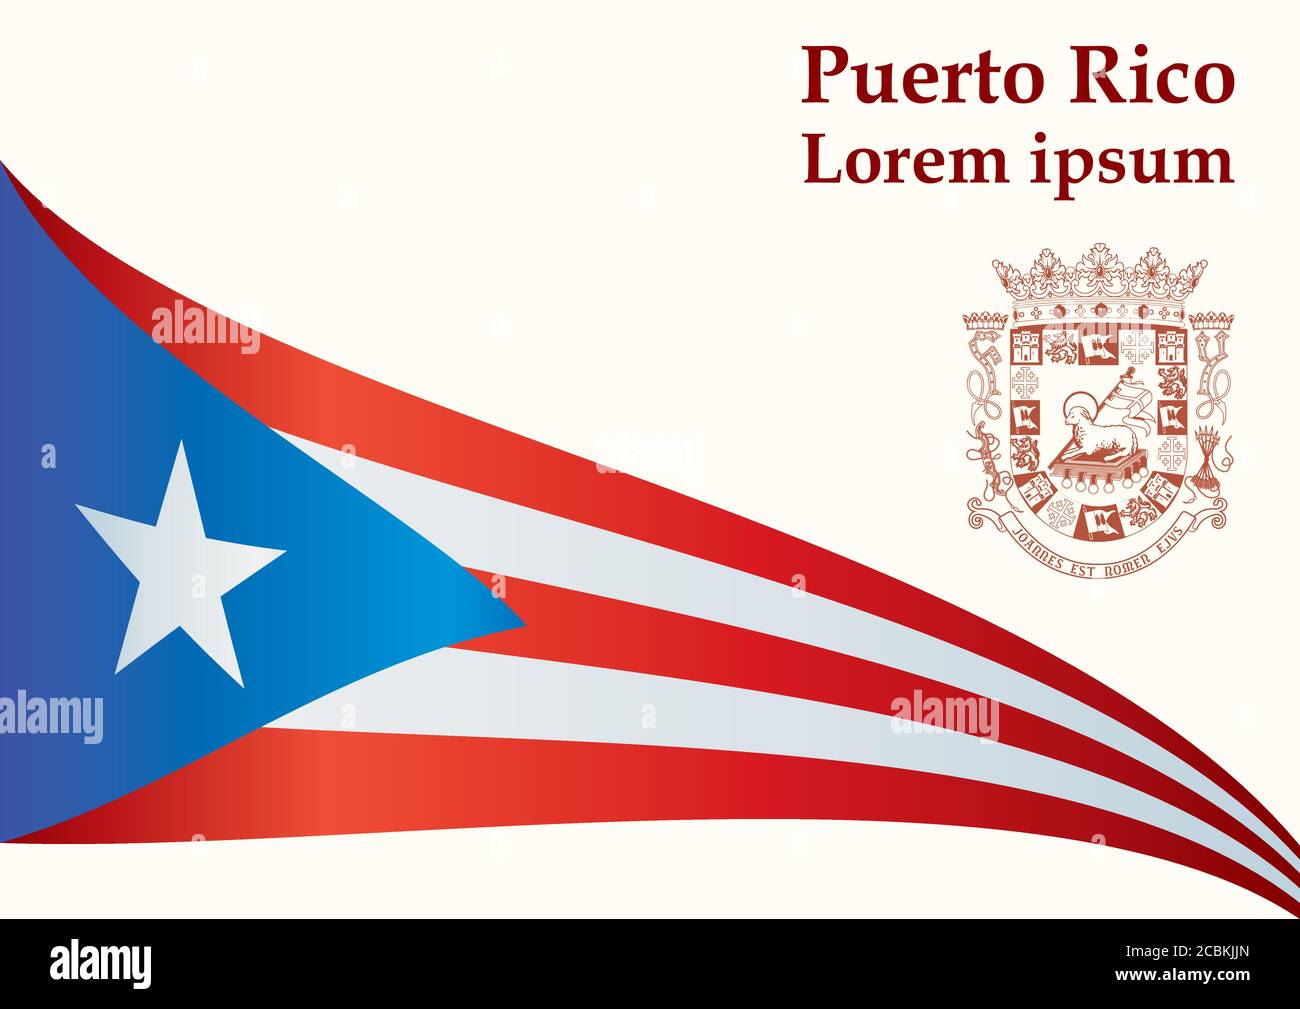 Drapeau de Porto Rico, Commonwealth de Porto Rico. Modèle pour la conception de prix, un document officiel avec le drapeau de Porto Rico. Vecto lumineux et coloré Illustration de Vecteur